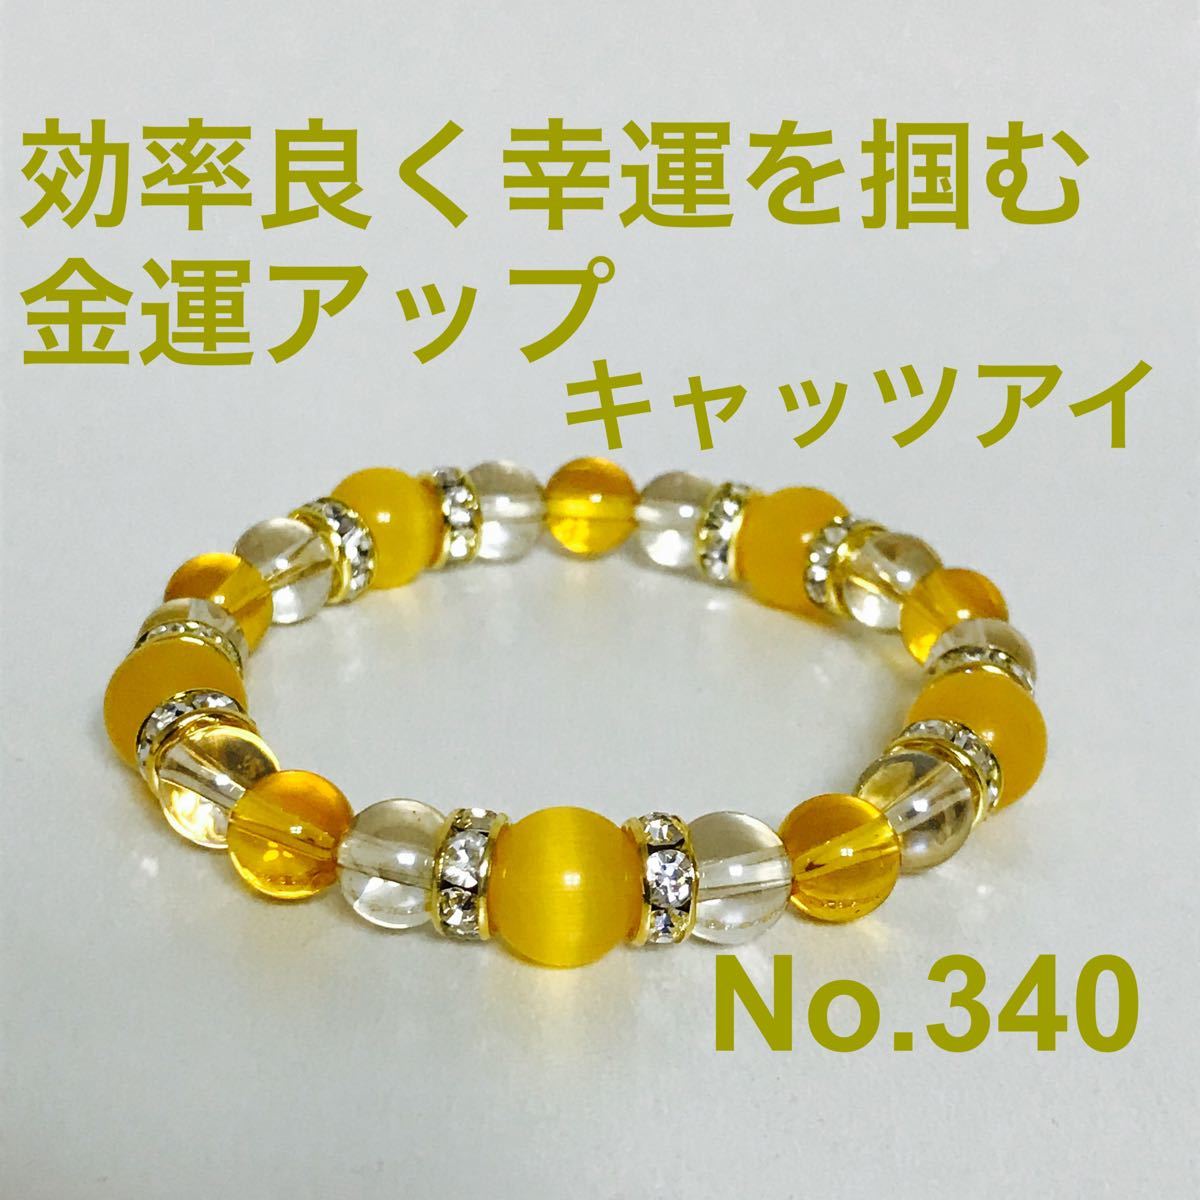 〇丑×フロストオニキス 天然石 パワーストーン 通販